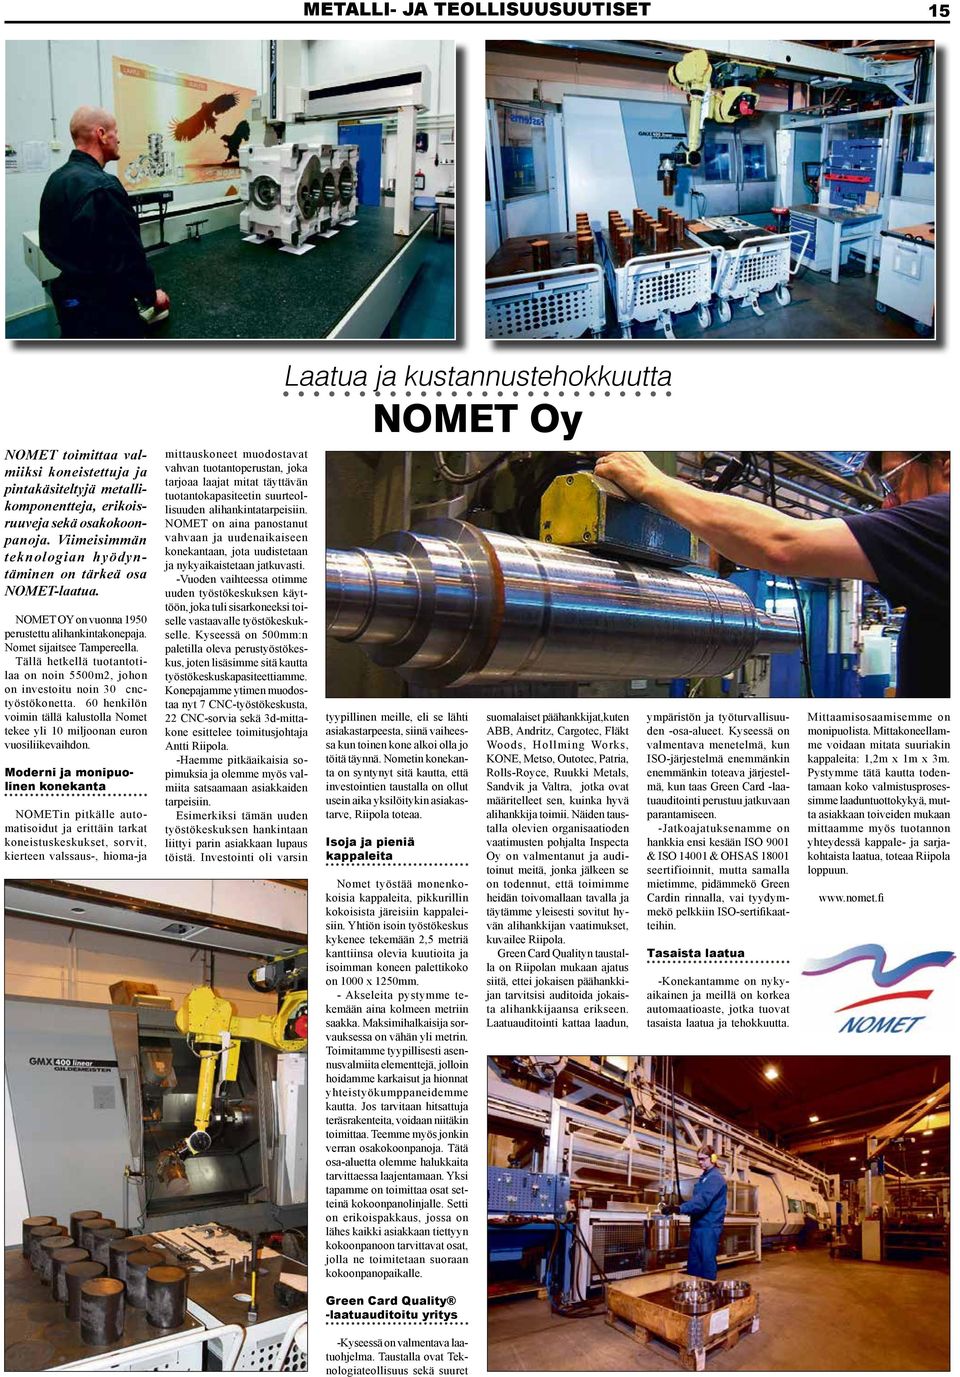 Tällä hetkellä tuotantotilaa on noin 5500m2, johon on investoitu noin 30 cnctyöstökonetta. 60 henkilön voimin tällä kalustolla Nomet tekee yli 10 miljoonan euron vuosiliikevaihdon.